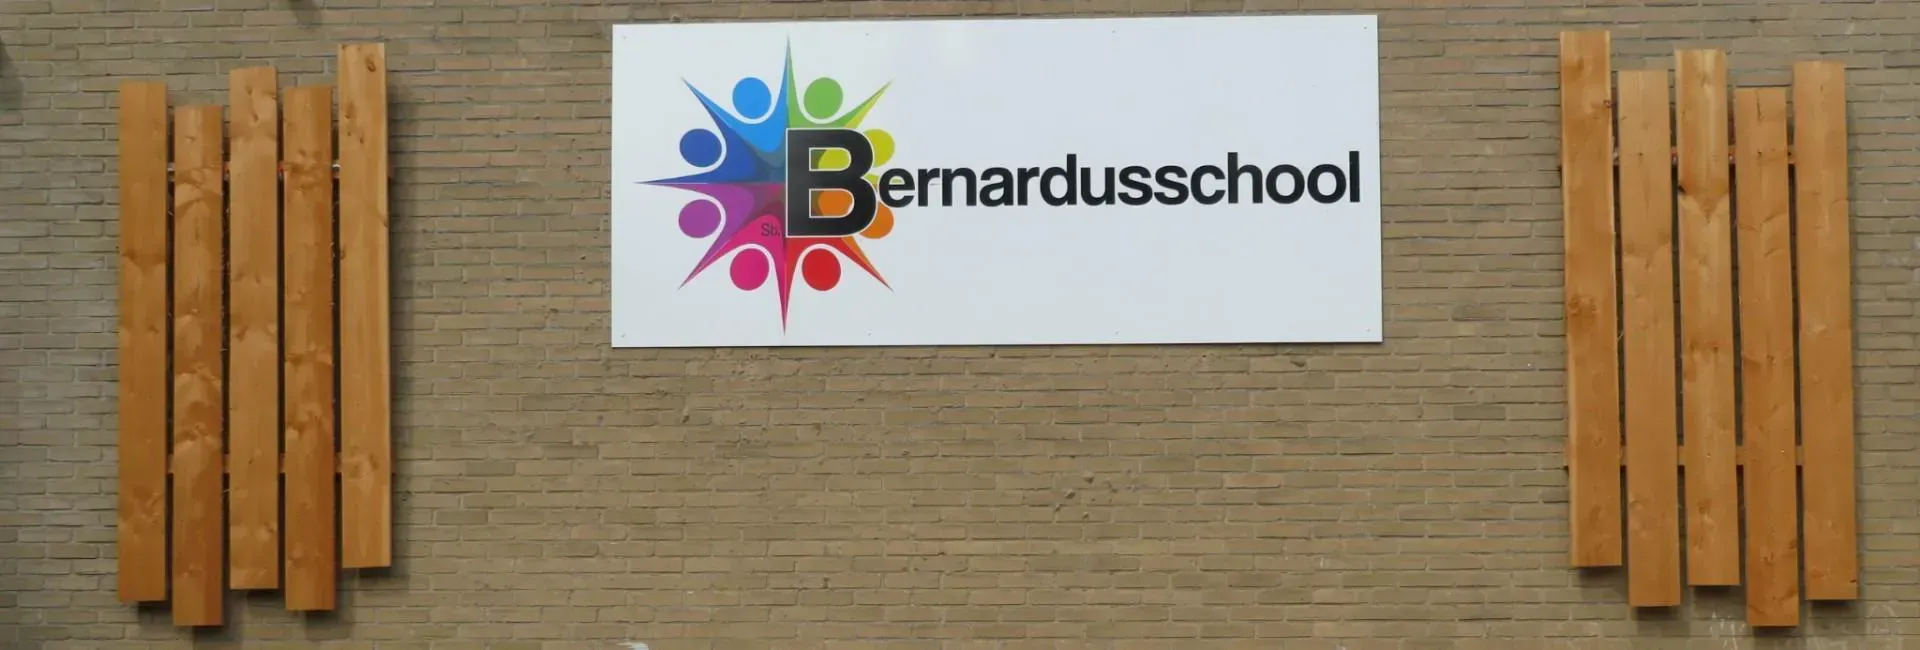 Bernardusschool Keijenborg